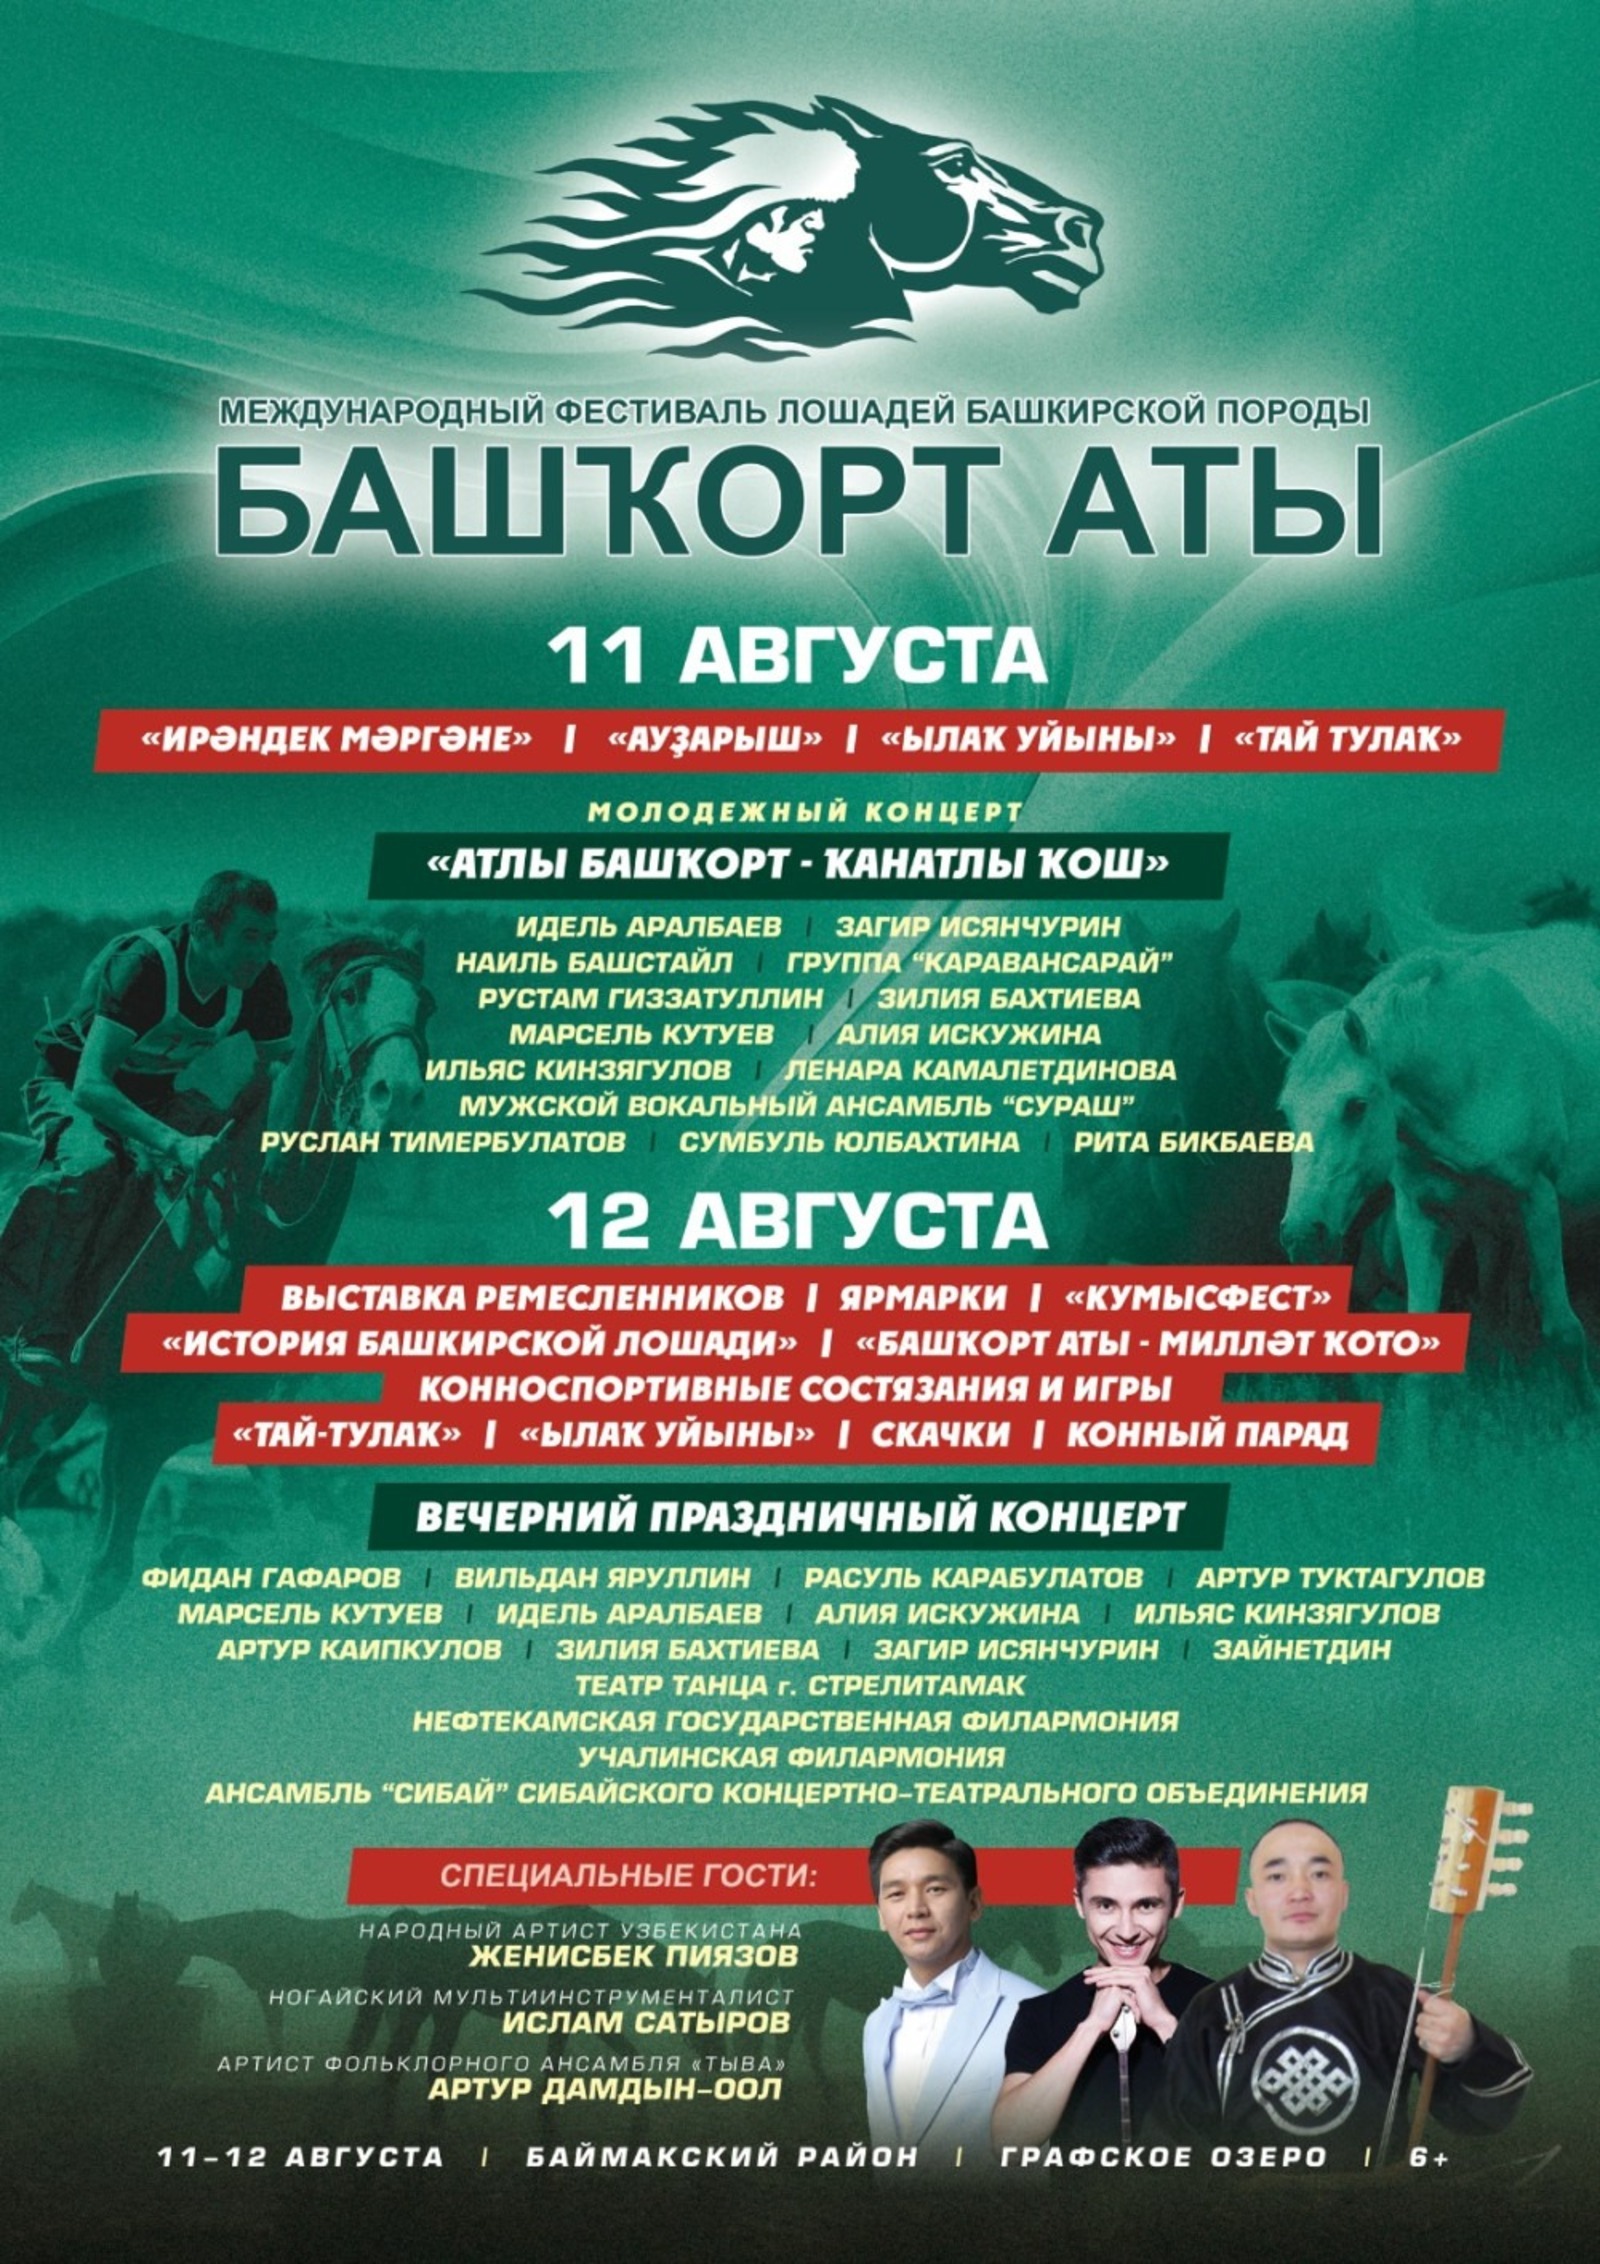 В Башкирии пройдет фестиваль лошадей башкирской породы - известна культурная программа